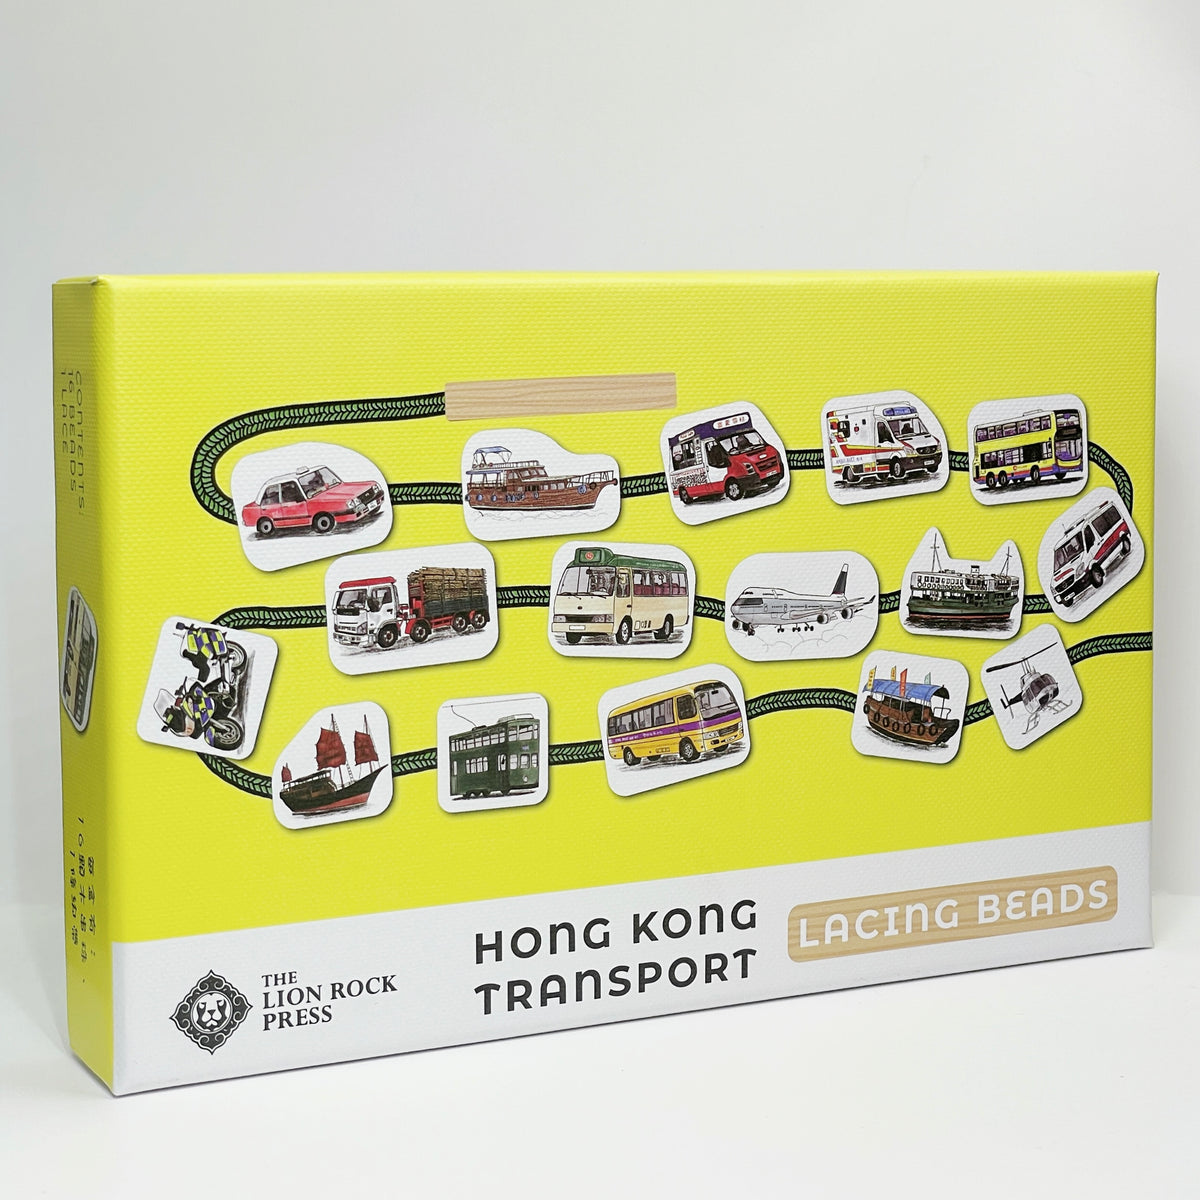 NEW LACING BEADS: Hong Kong Transport (Yellow)